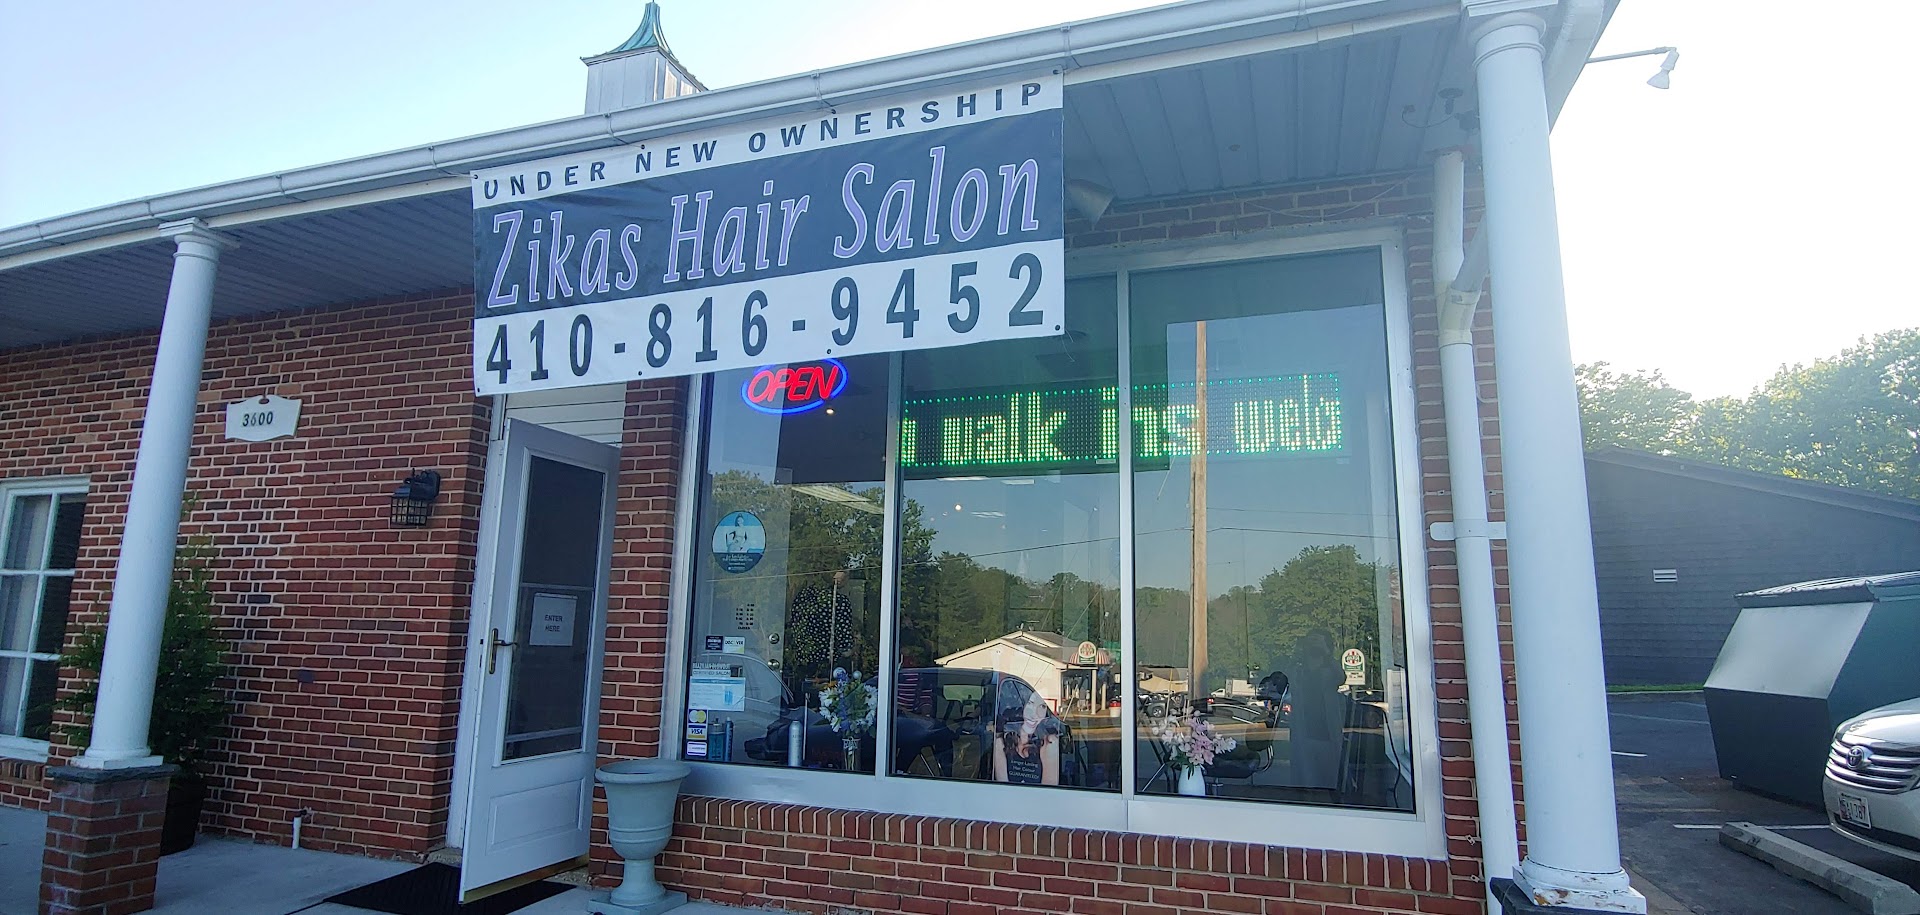 Zikas Hair Salon